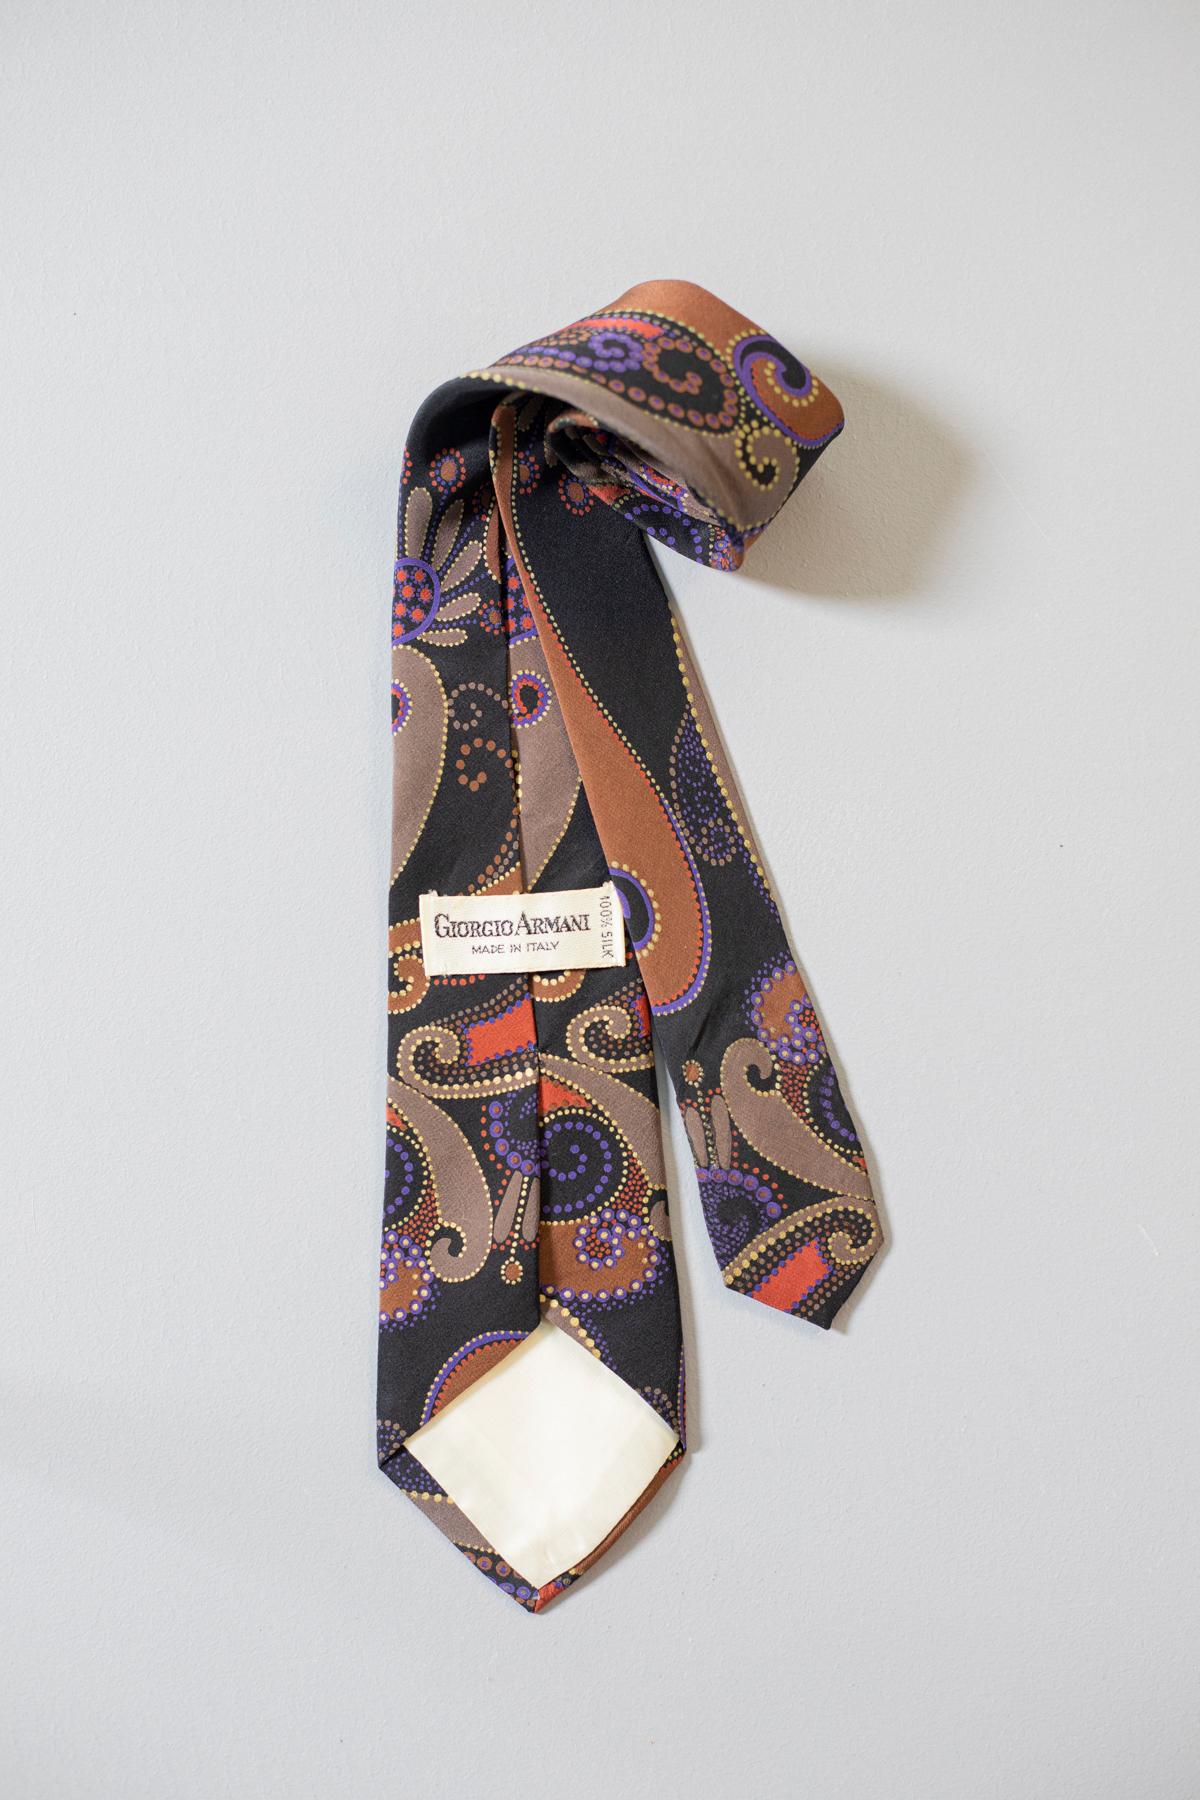 Cette cravate vintage conçue par Giorgio Armani est élégante et unique. Son motif rappelle le paisley et ses couleurs vives sur un fond noir le rendent juste assez voyant. Cette cravate est entièrement en soie et elle est parfaite pour une fête ou